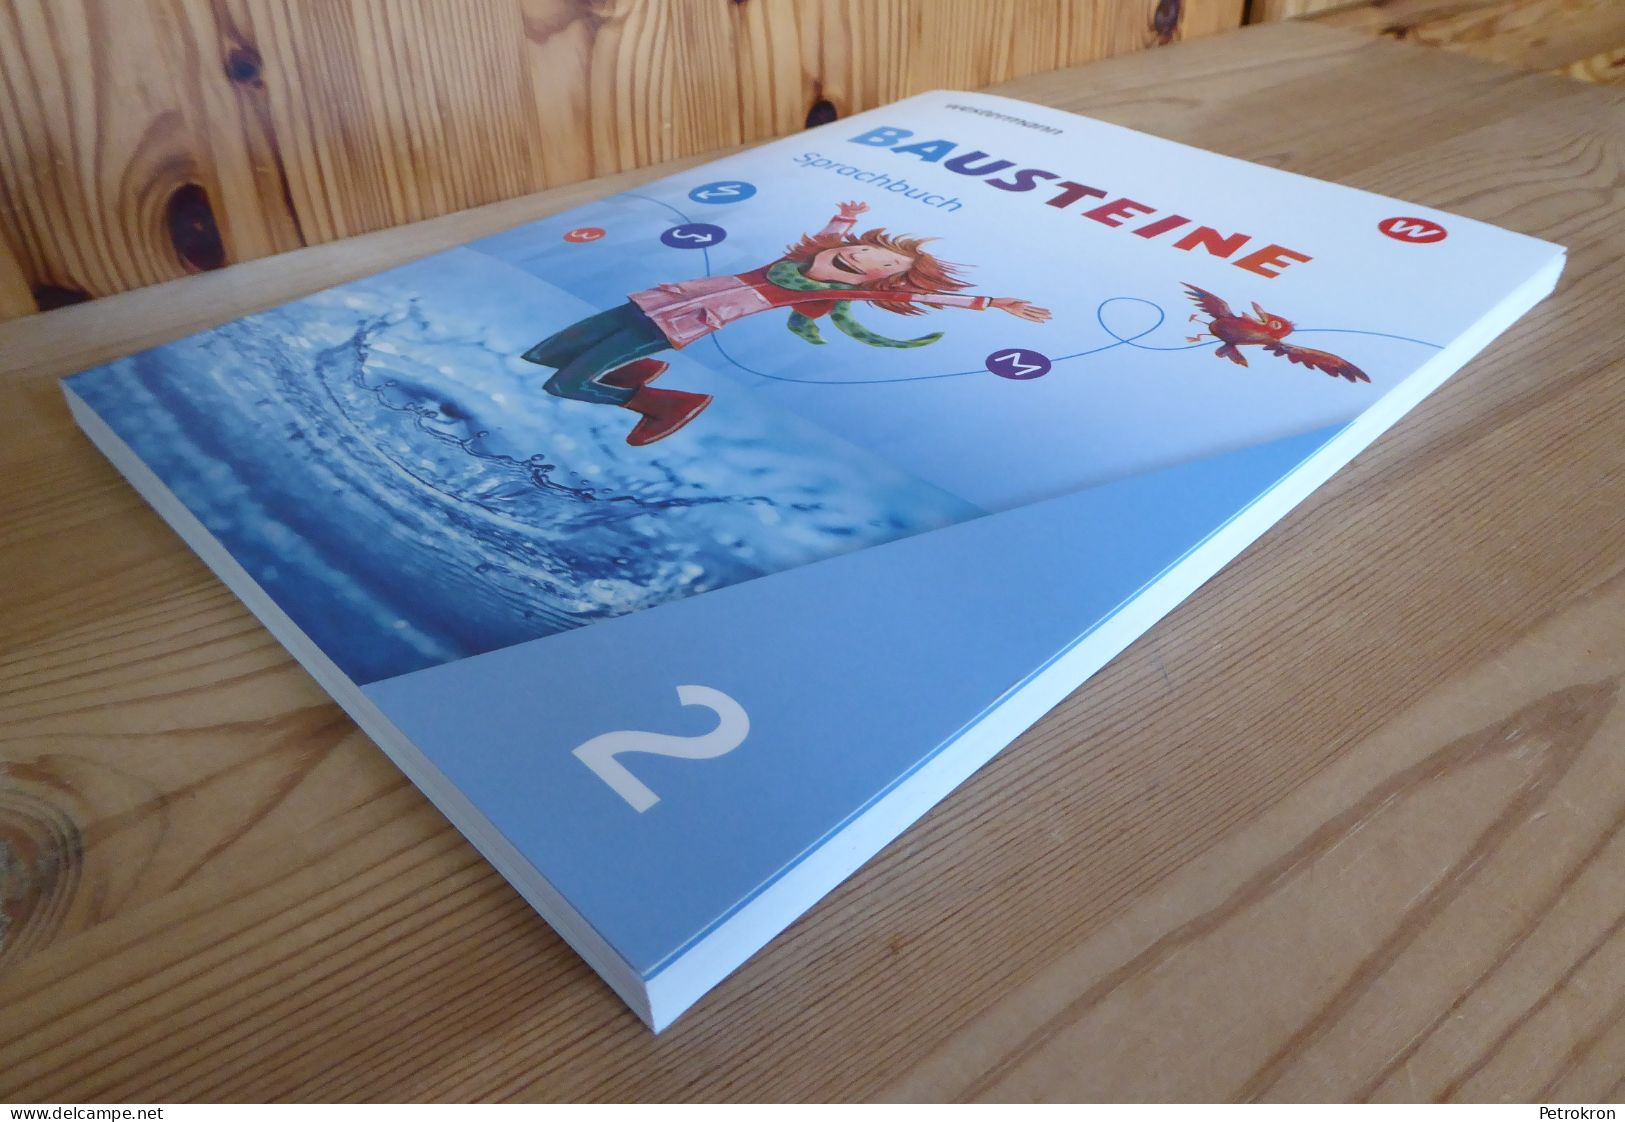 Westermann Bausteine Sprachbuch Klasse 2 Grundschule Deutsch 2020 Mit Beiheft - Libros De Enseñanza